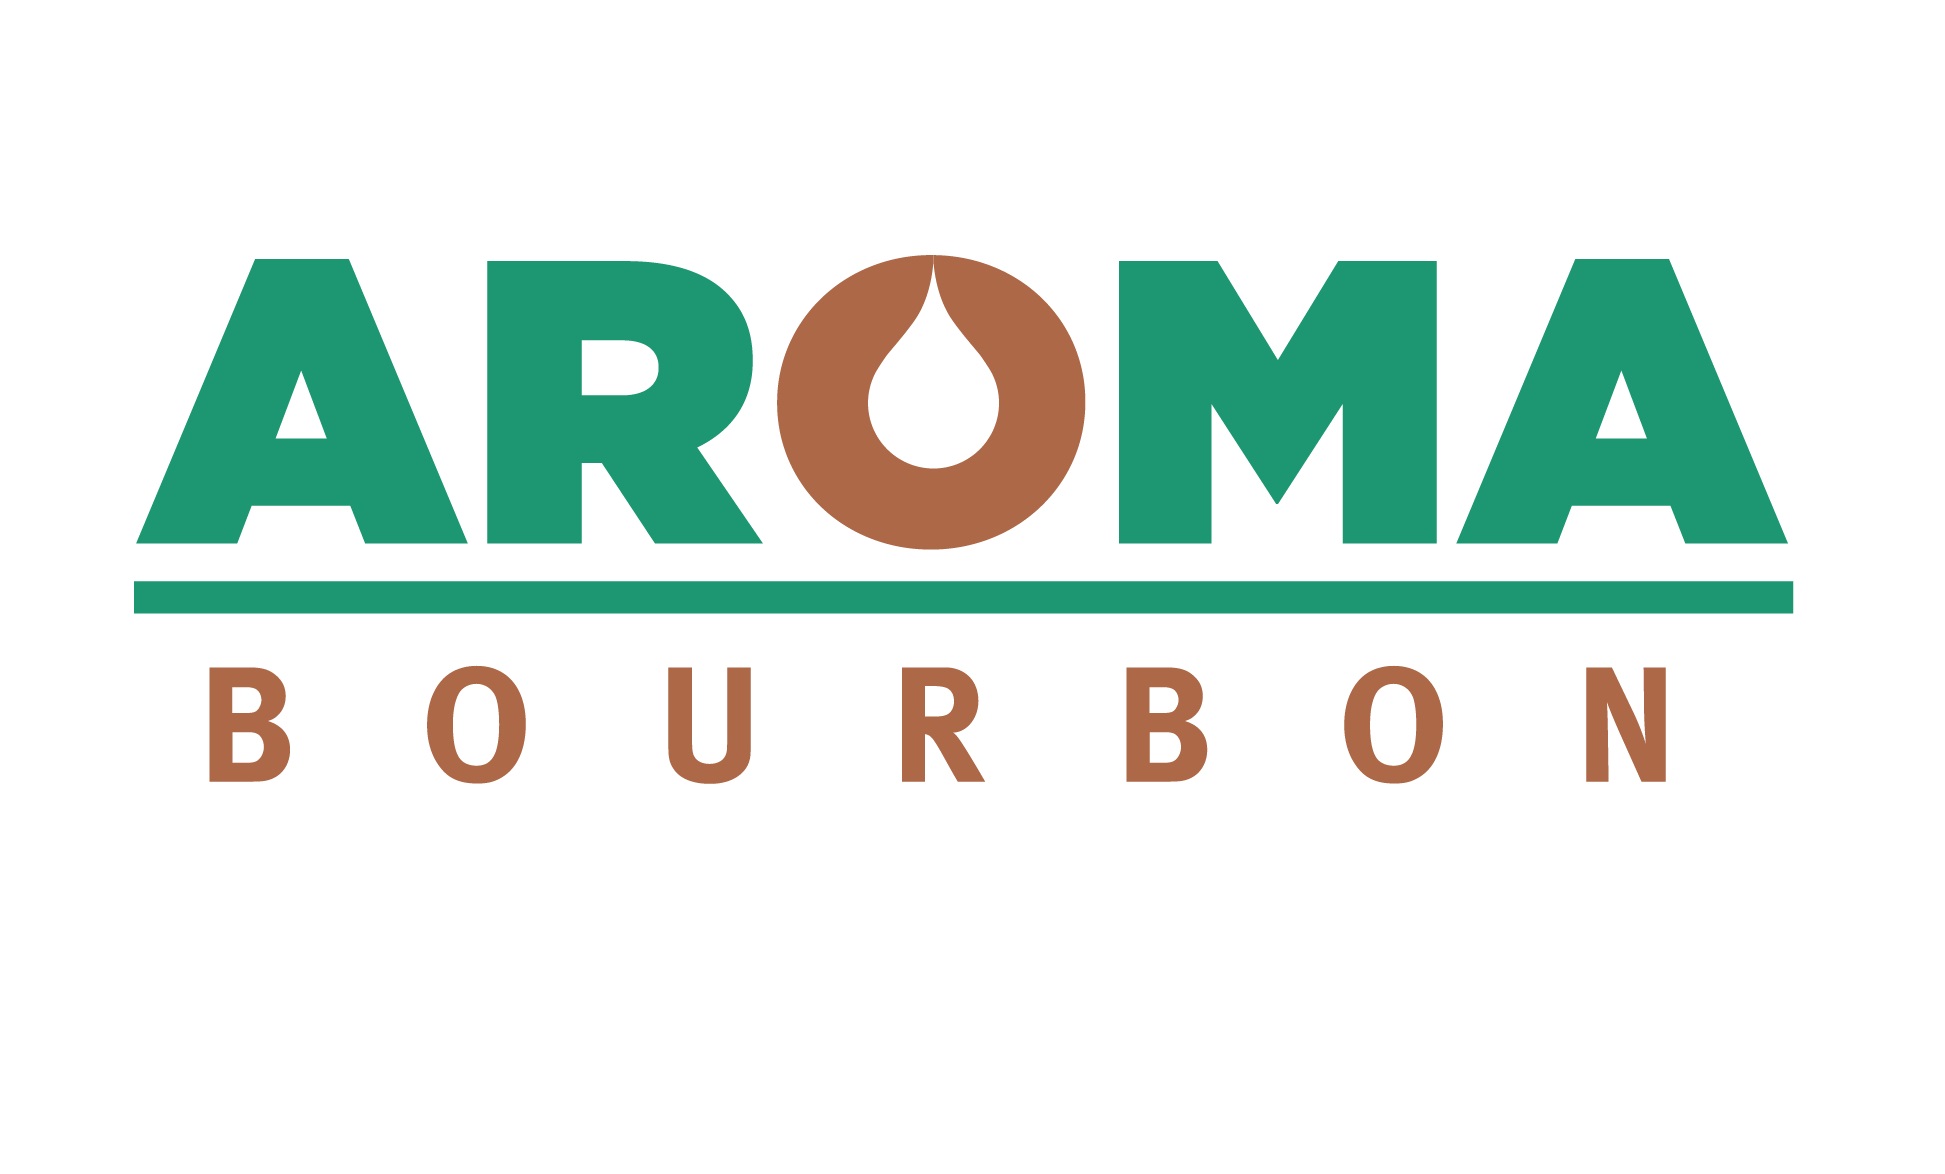 AROMA BOURBON